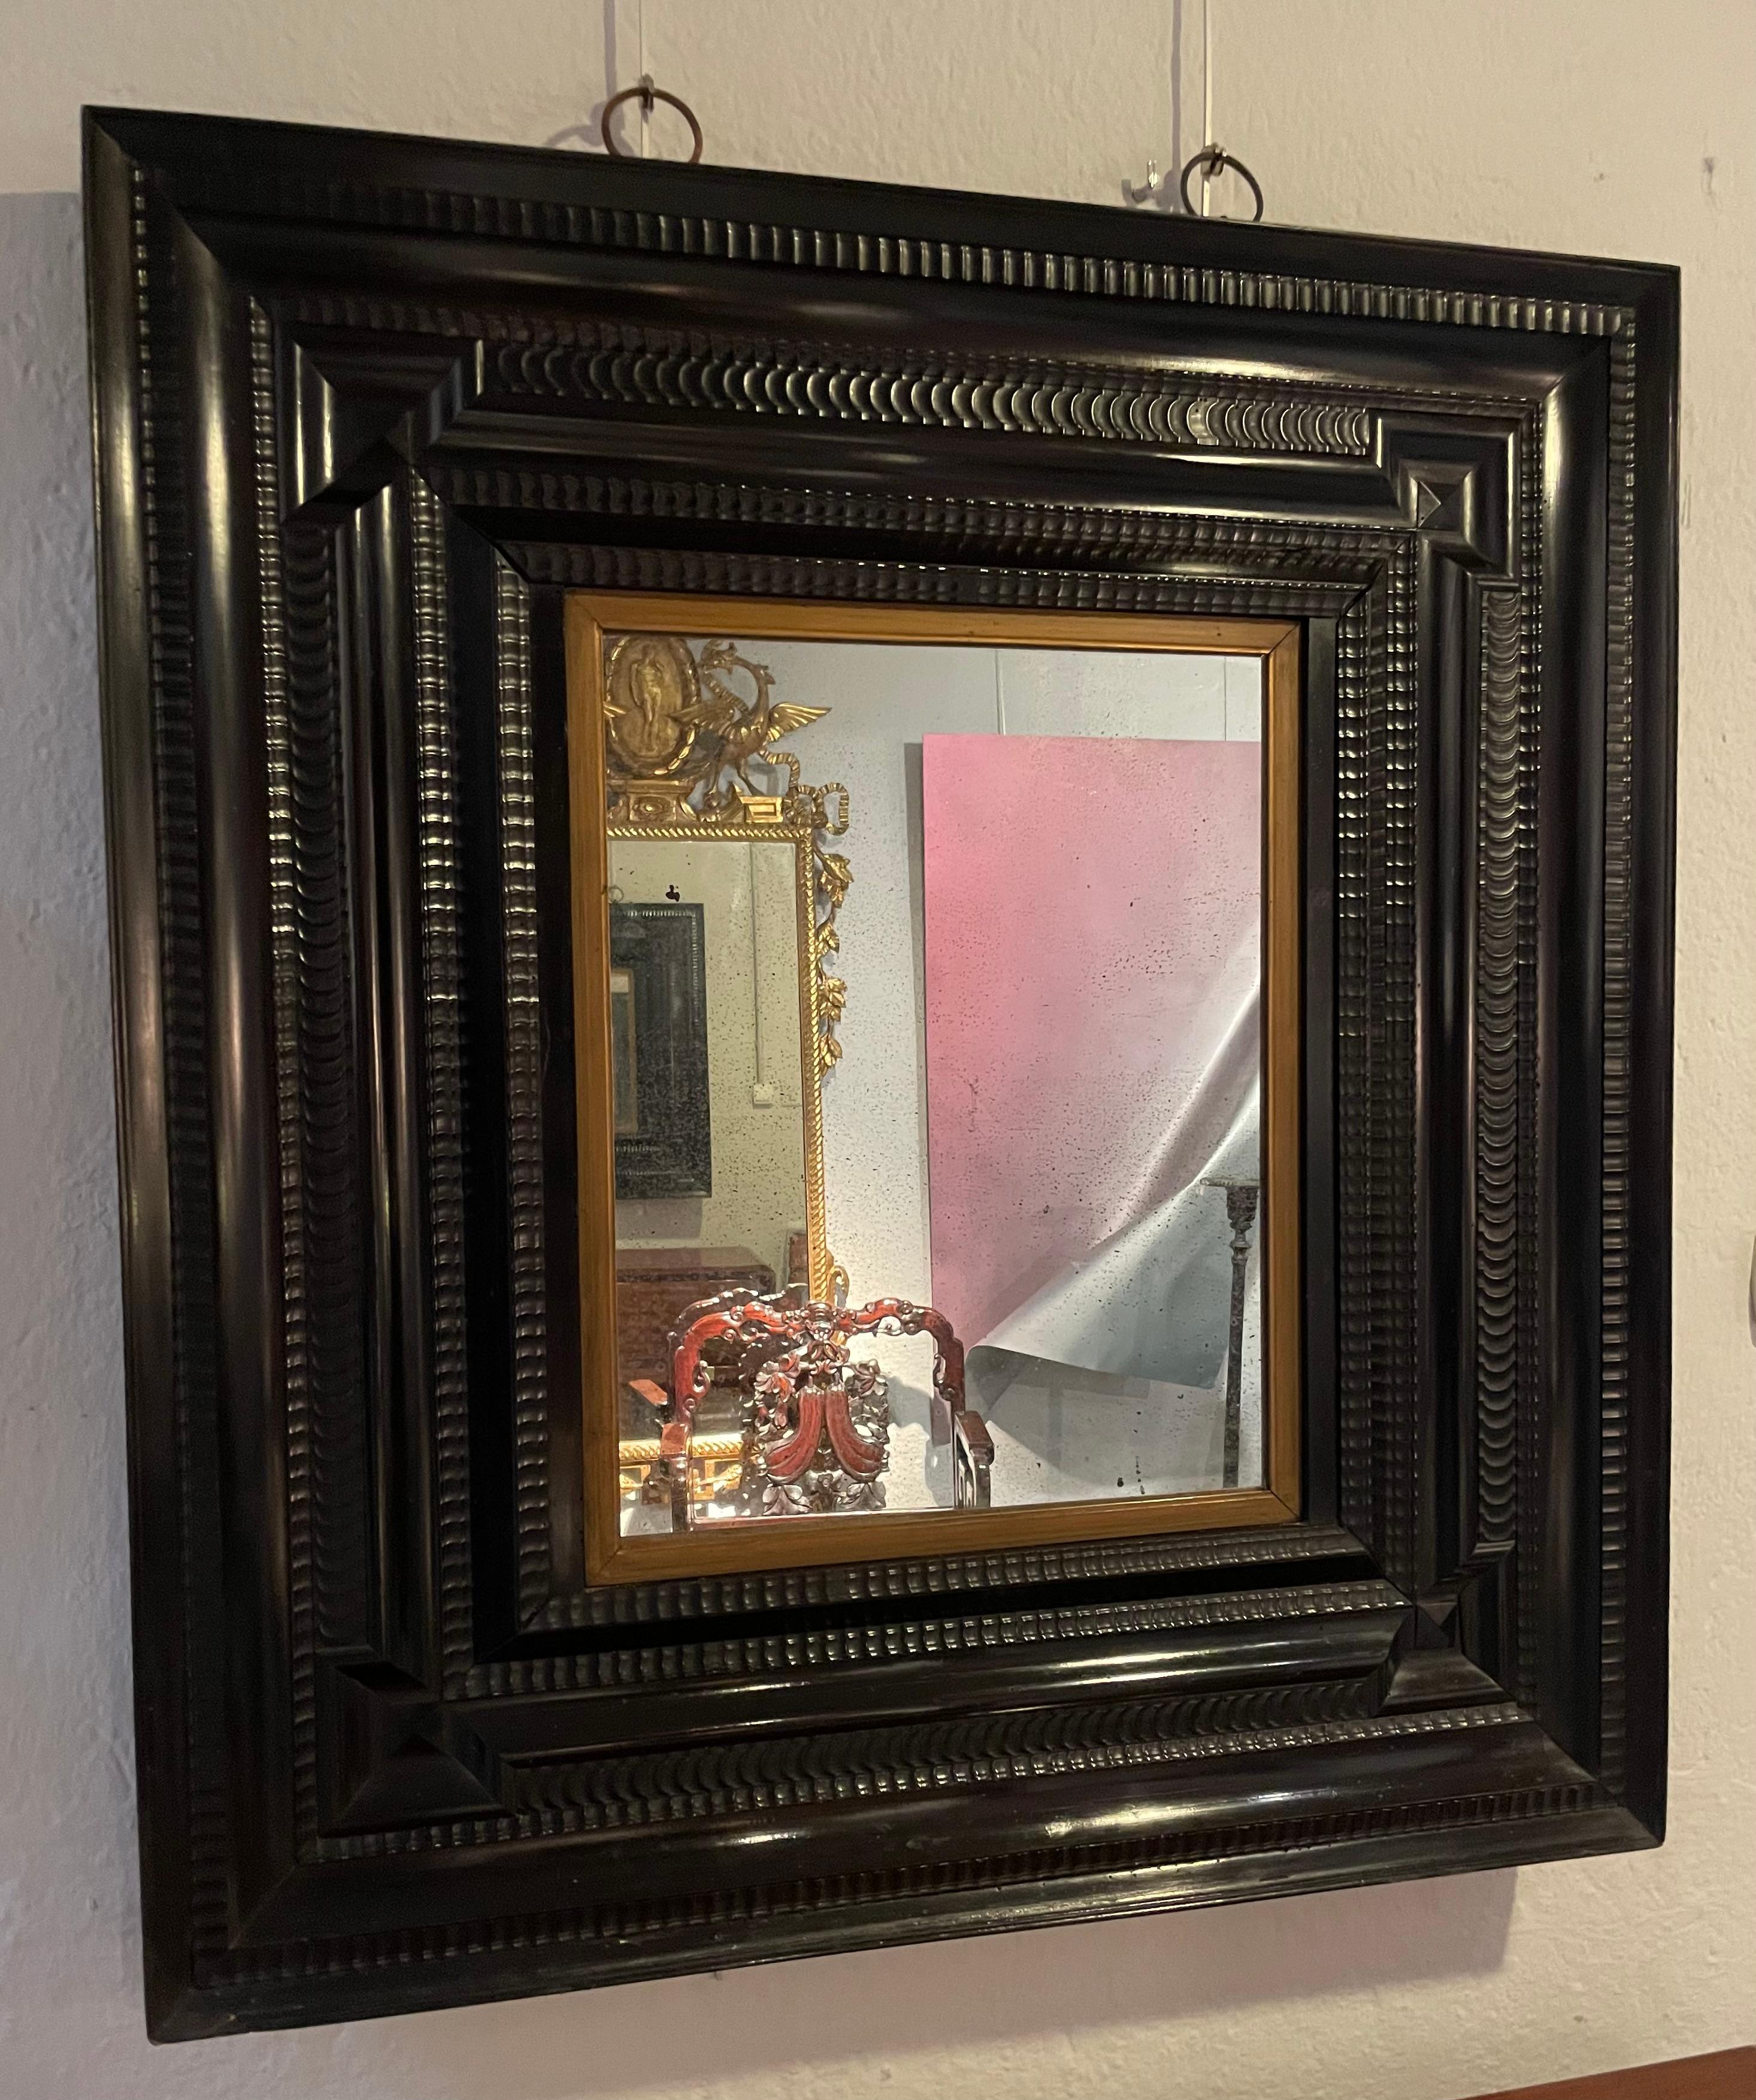 Außergewöhnlicher niederländischer Spiegel aus furniertem und ebonisiertem Holz. 
Abwechselnd gelockte und glatte Leisten, 23 cm breit. 
Spiegel in Museumsqualität.
 